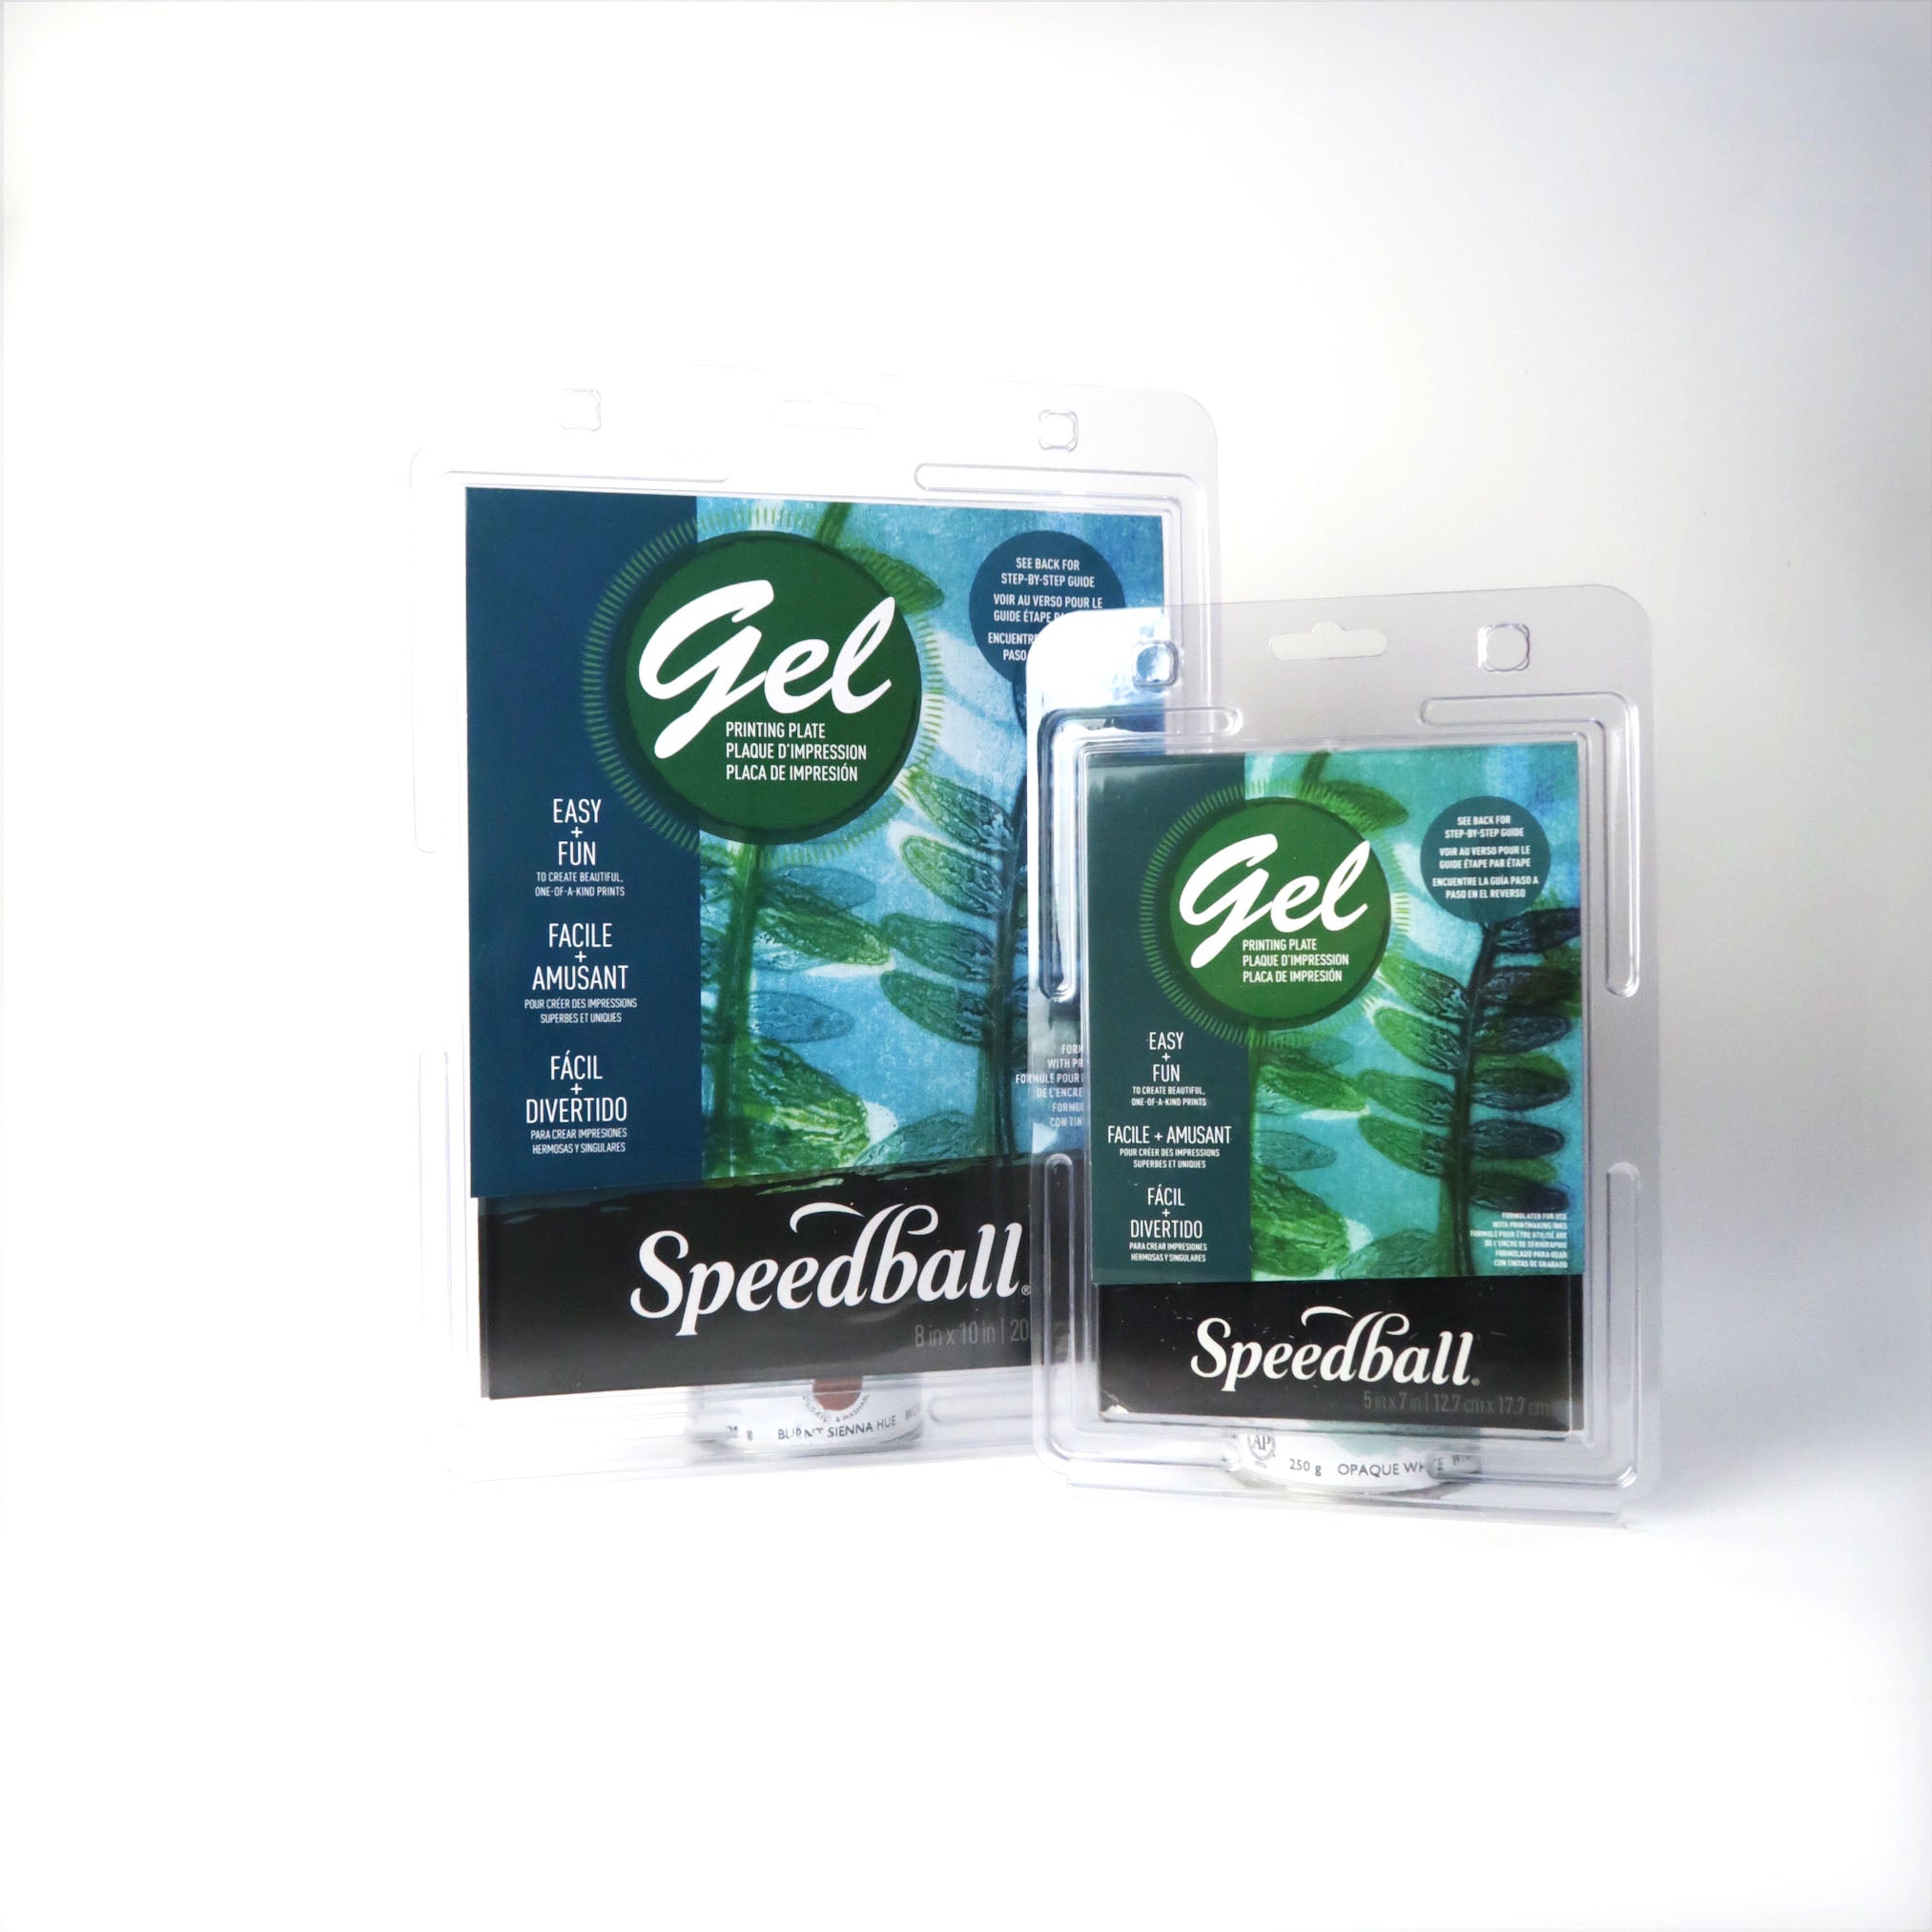 Speedball Gel Printing Plate